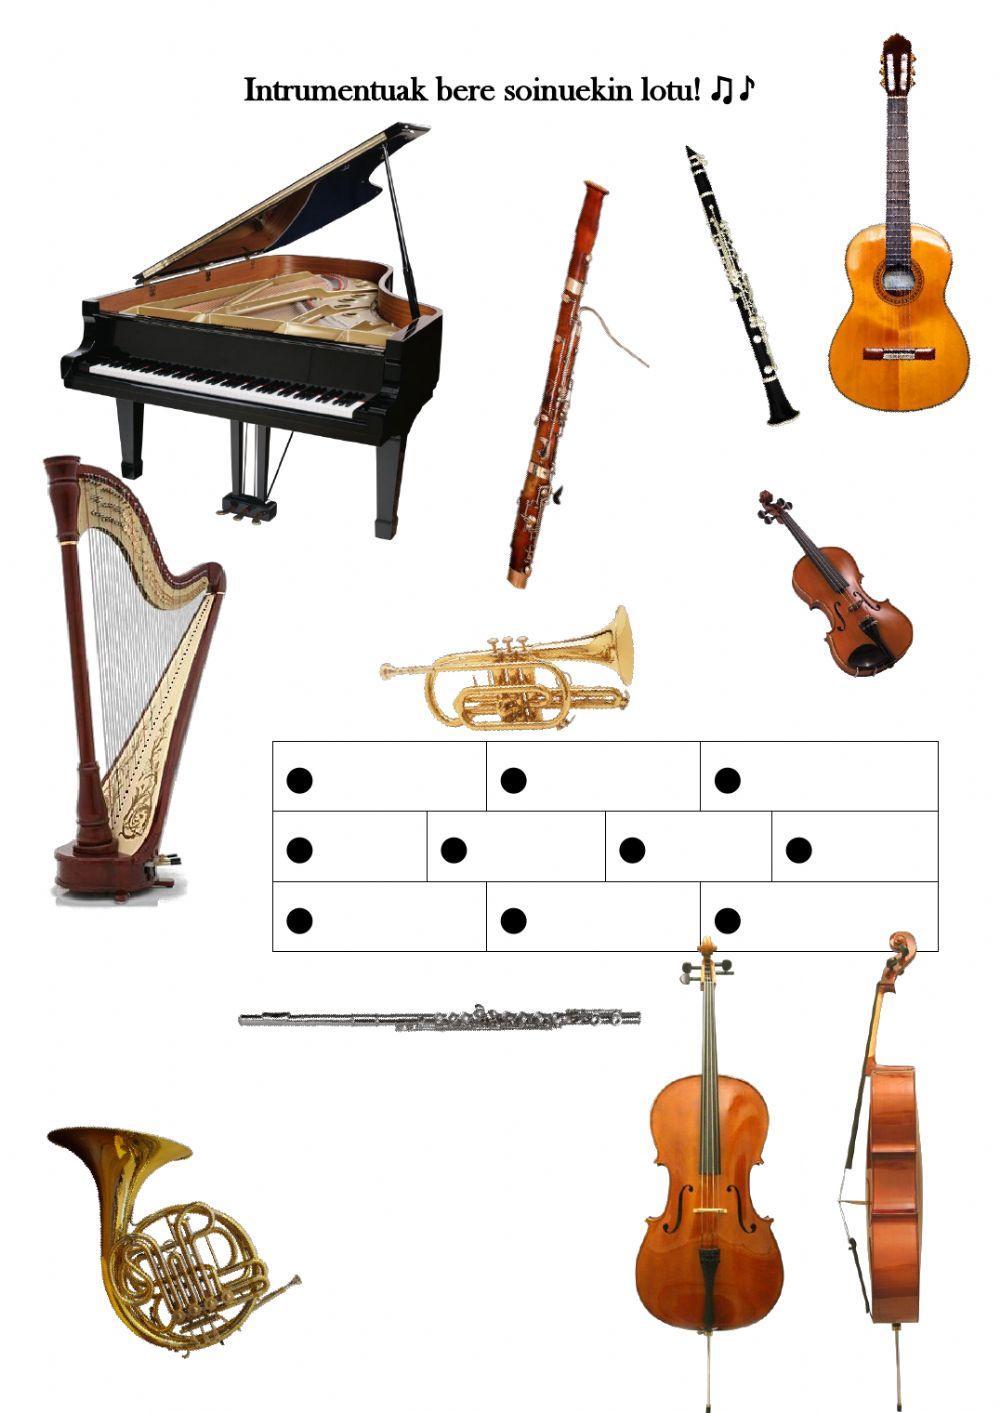 Instrumentuak bilatu